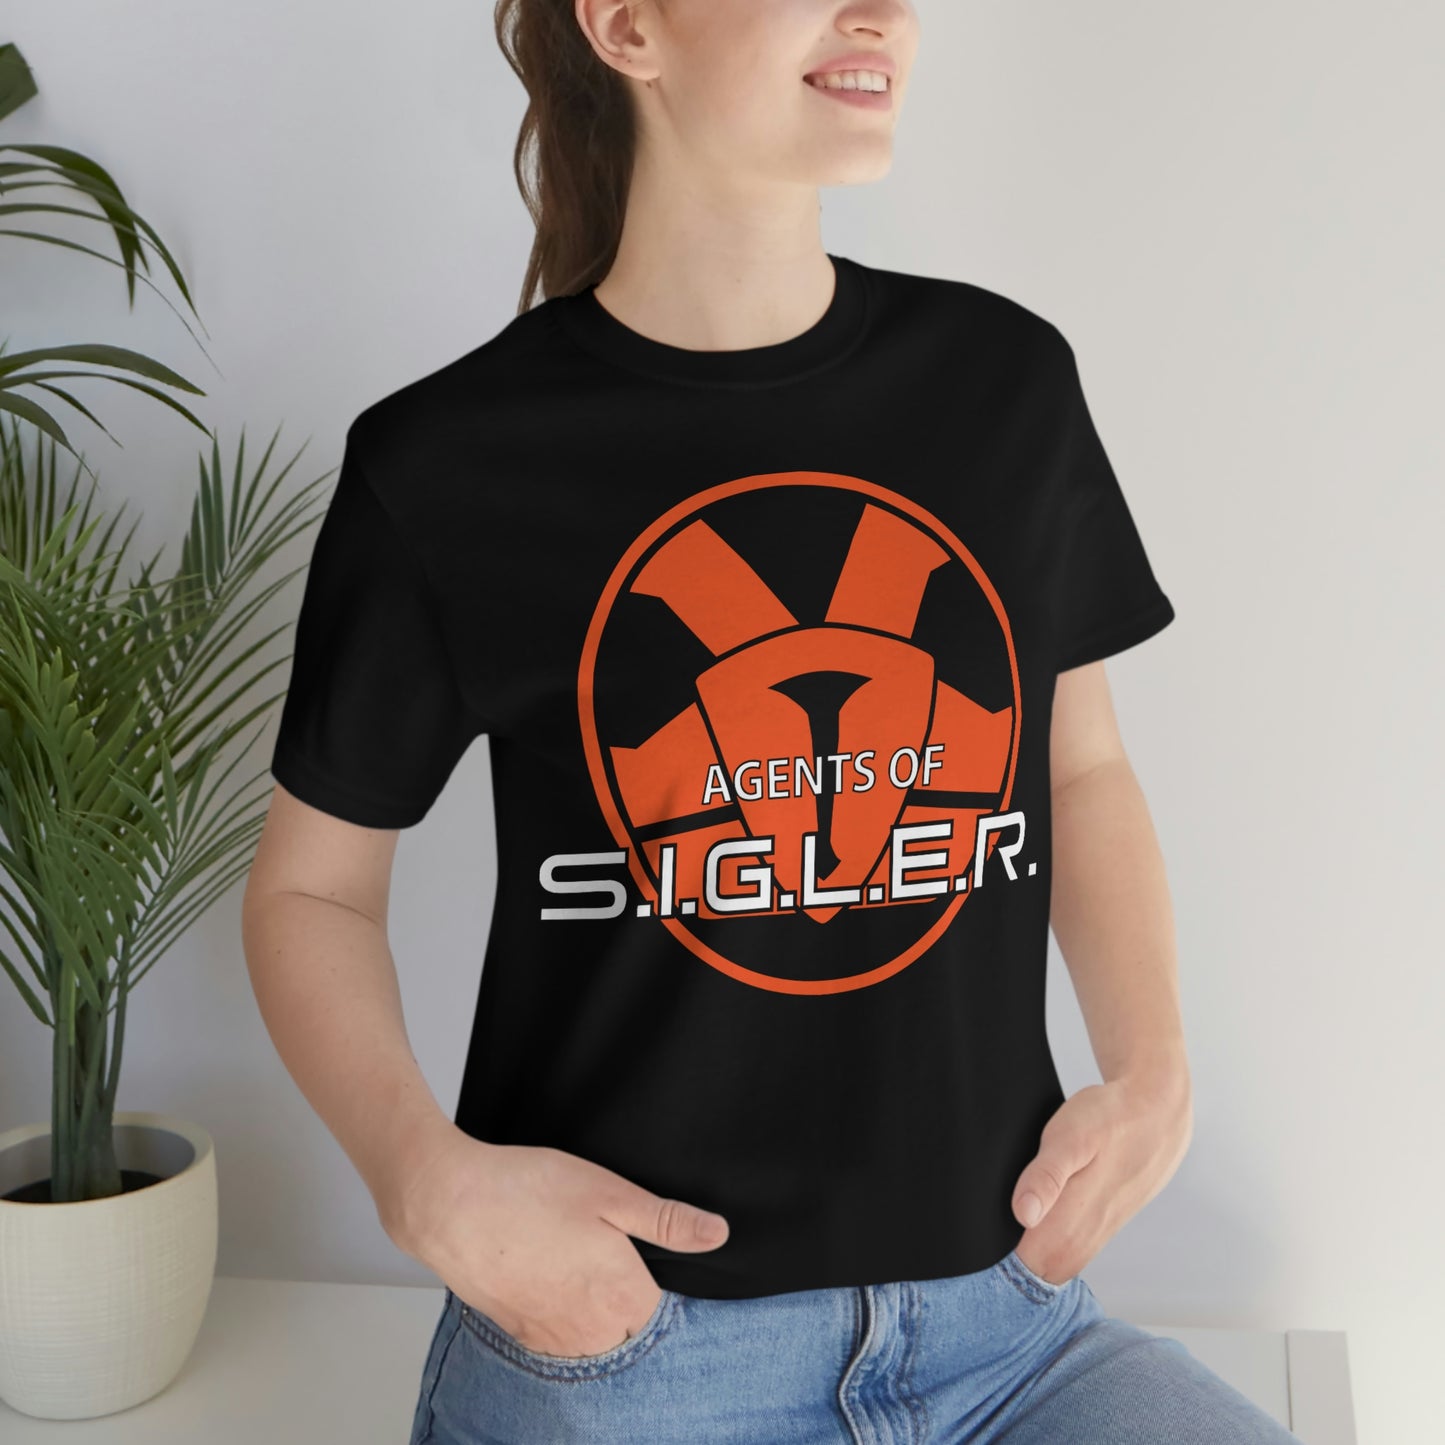 SiglerFest 2013: Agents of S.I.G.L.E.R.